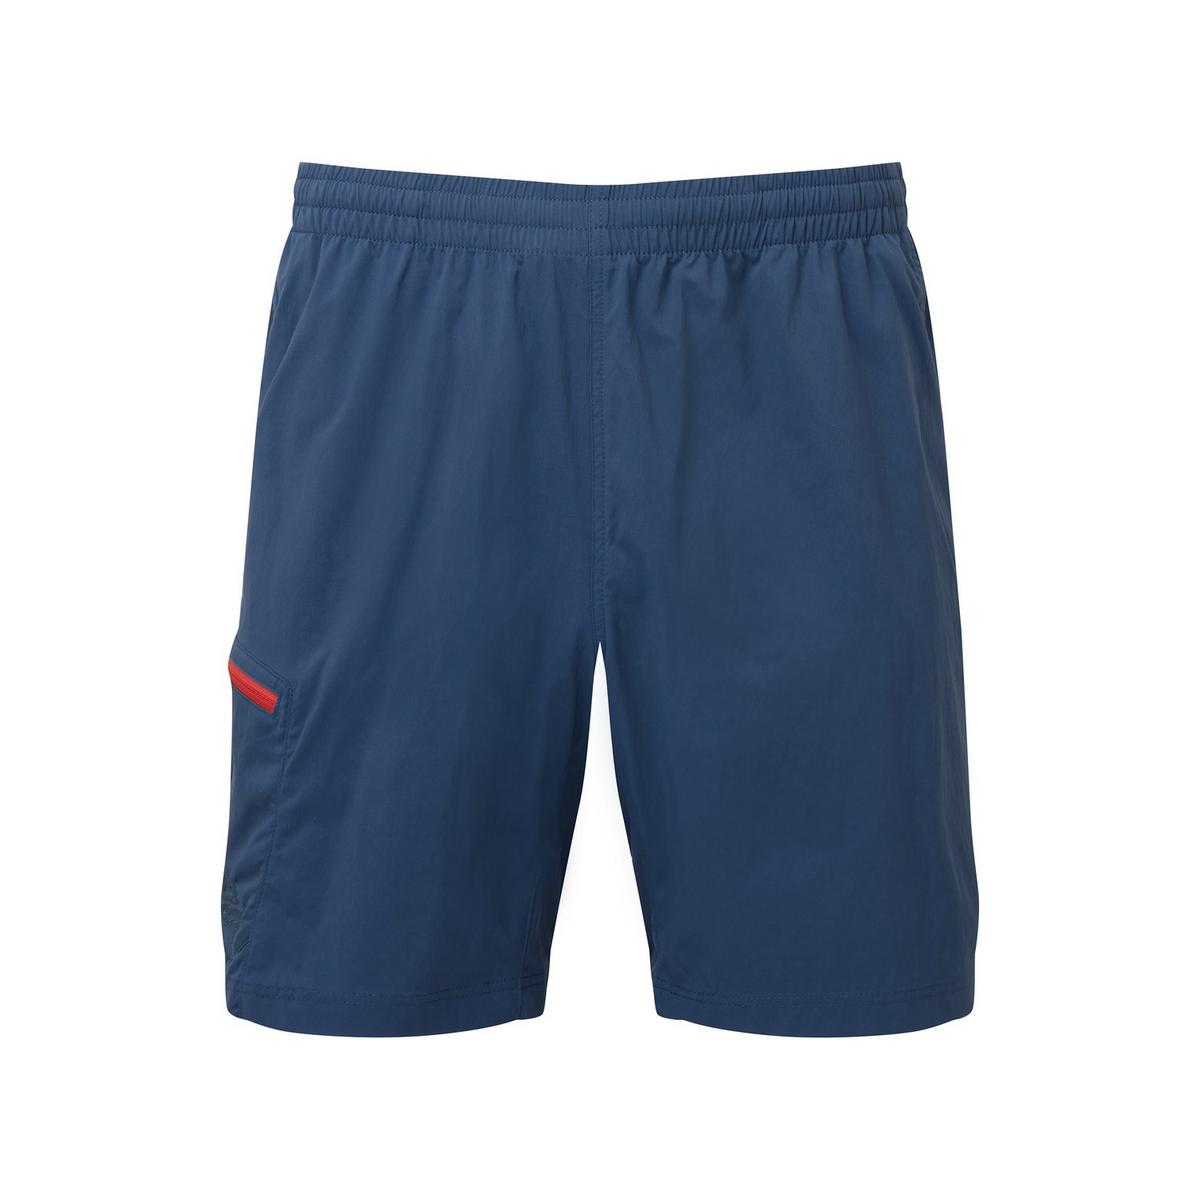 Mountain Equipment Men's Dynamo Shorts - Majolica Blue